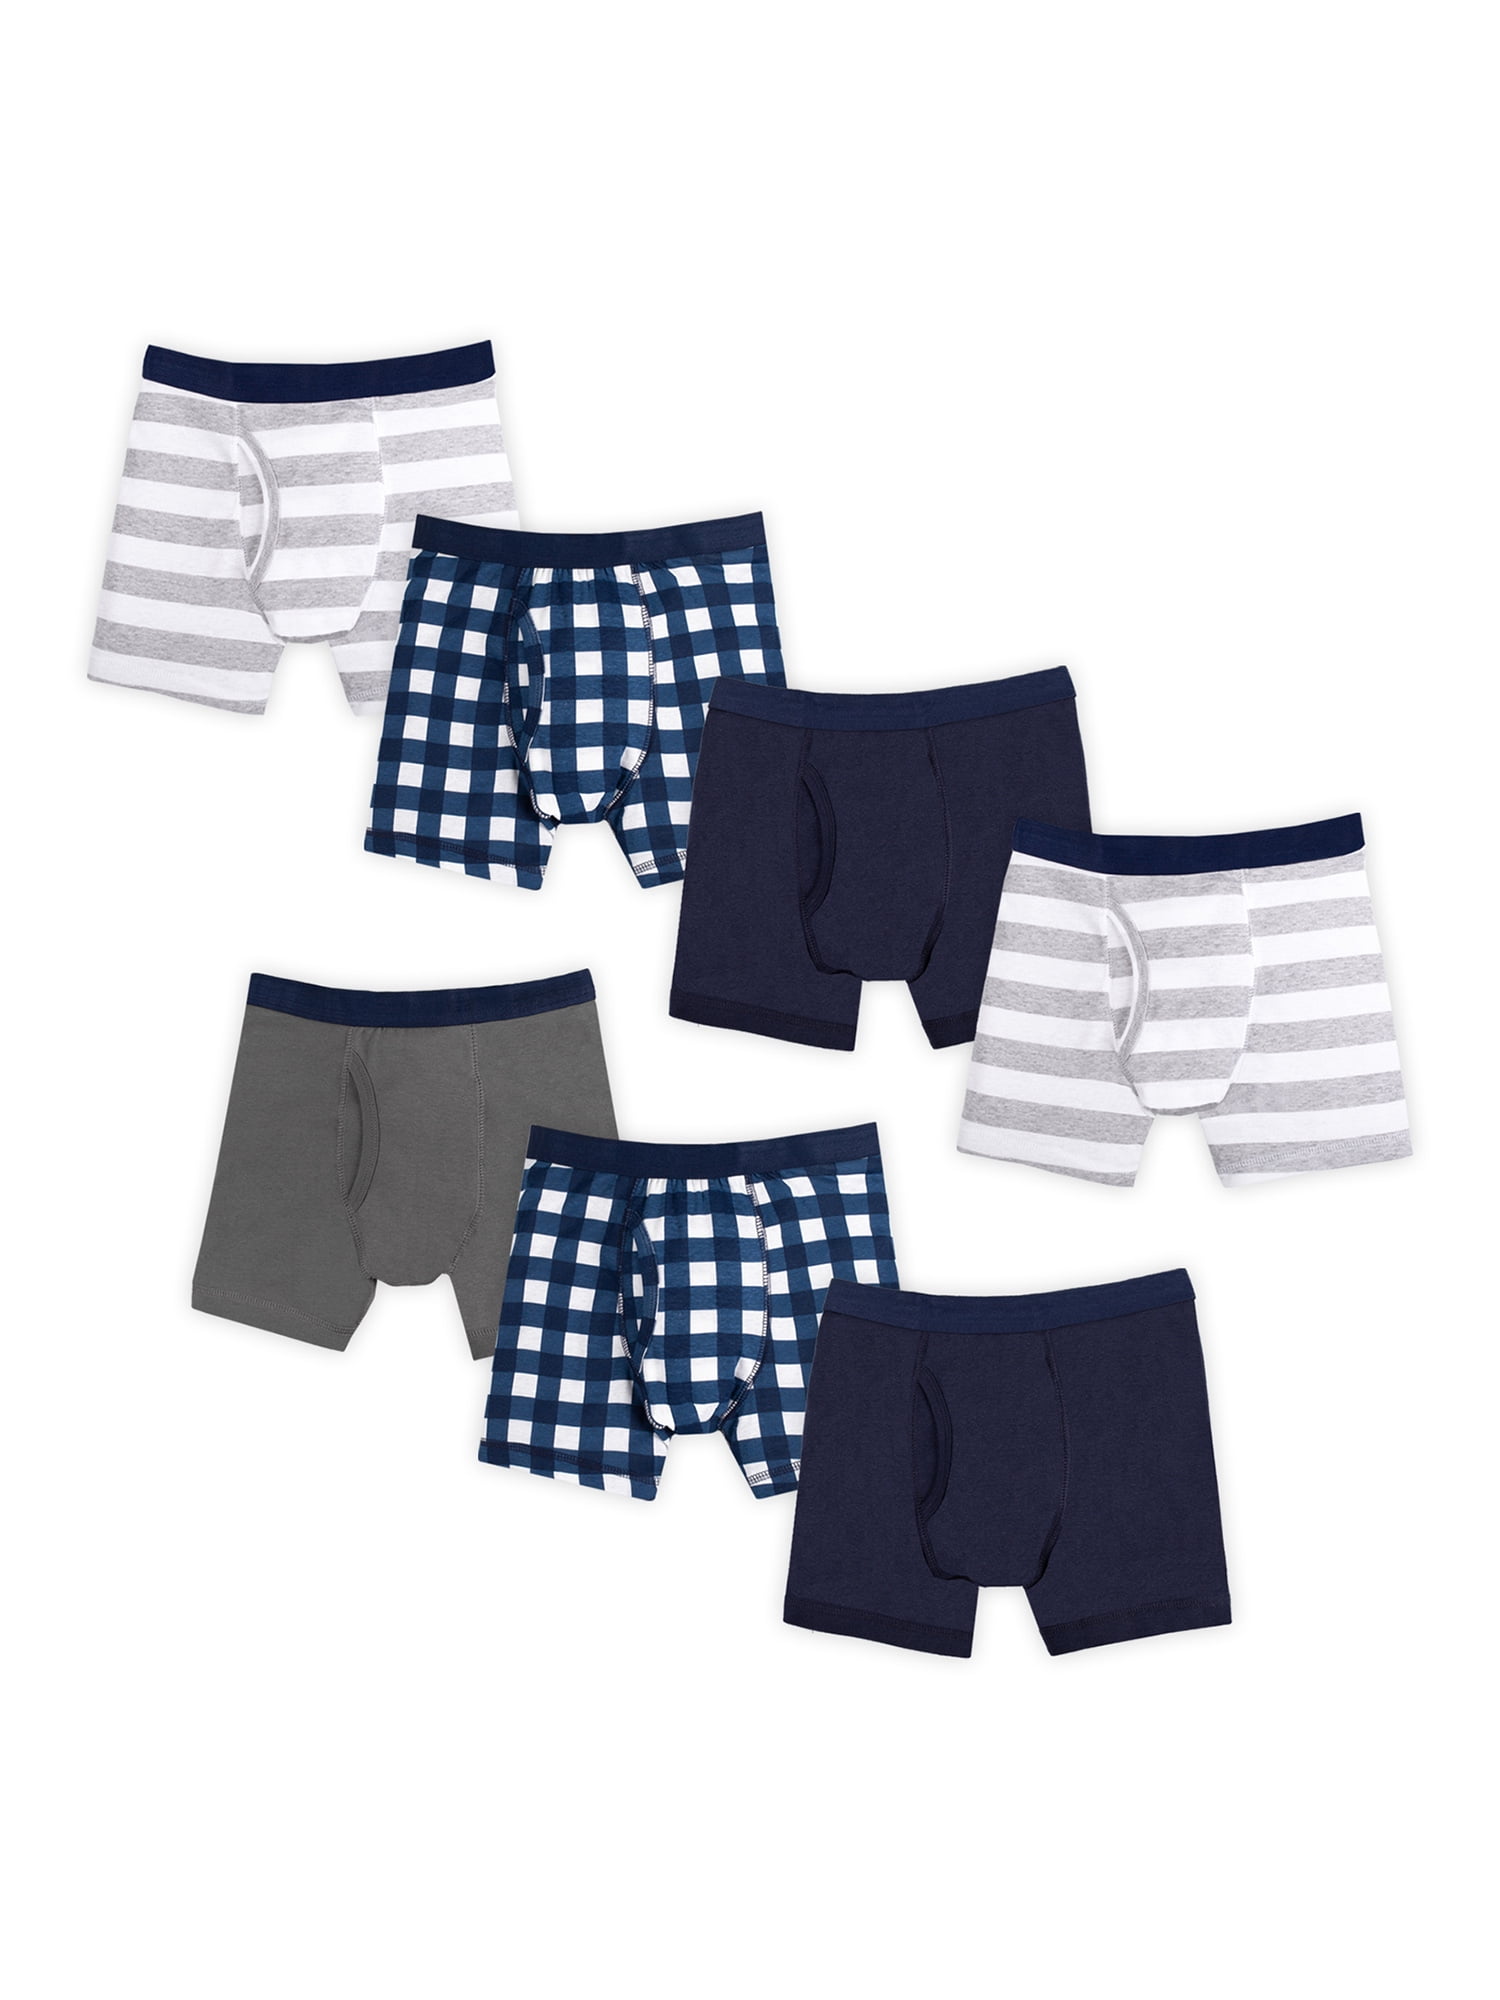 6Pack kids toddler Little Boys' Soft Combed Cotton boxer Briefs Underwear Undies